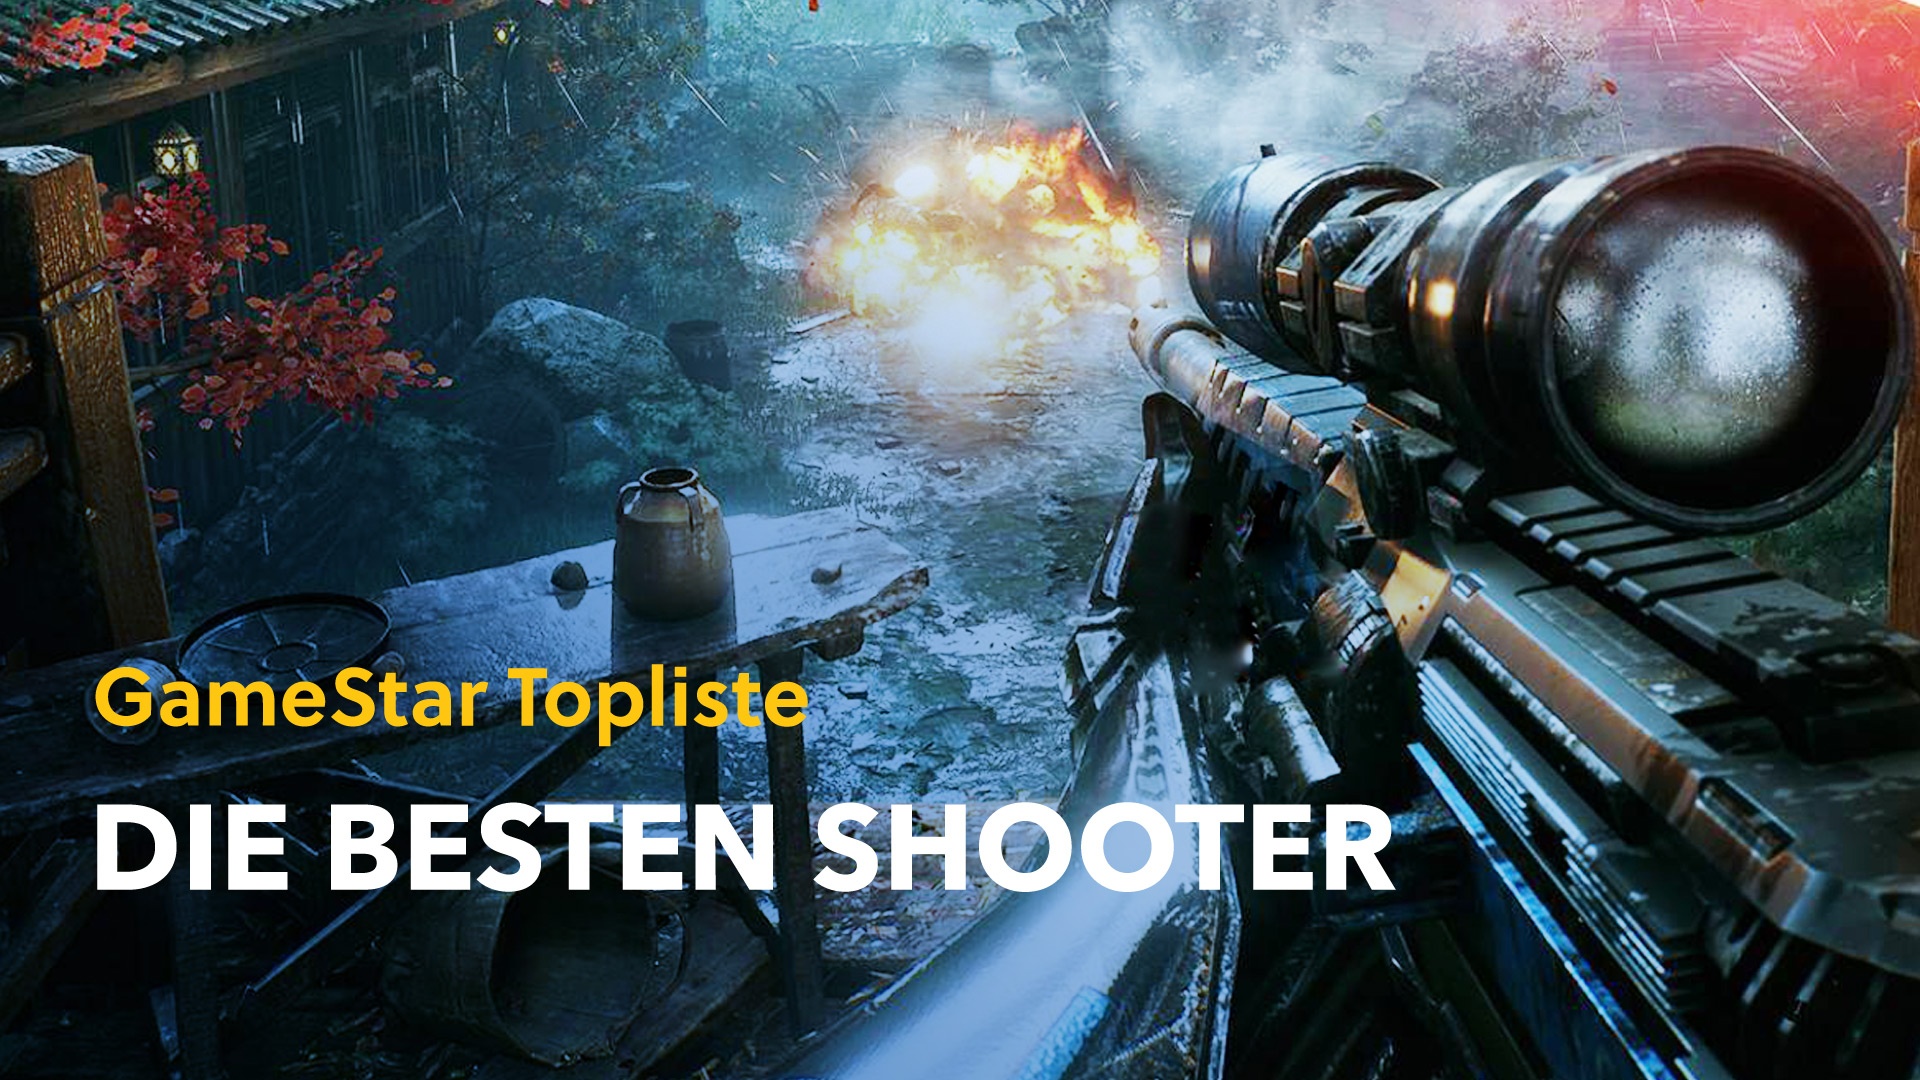 #Die 100 besten Shooter aller Zeiten starten morgen auf GameStar! Alle Infos zum Mega-Event